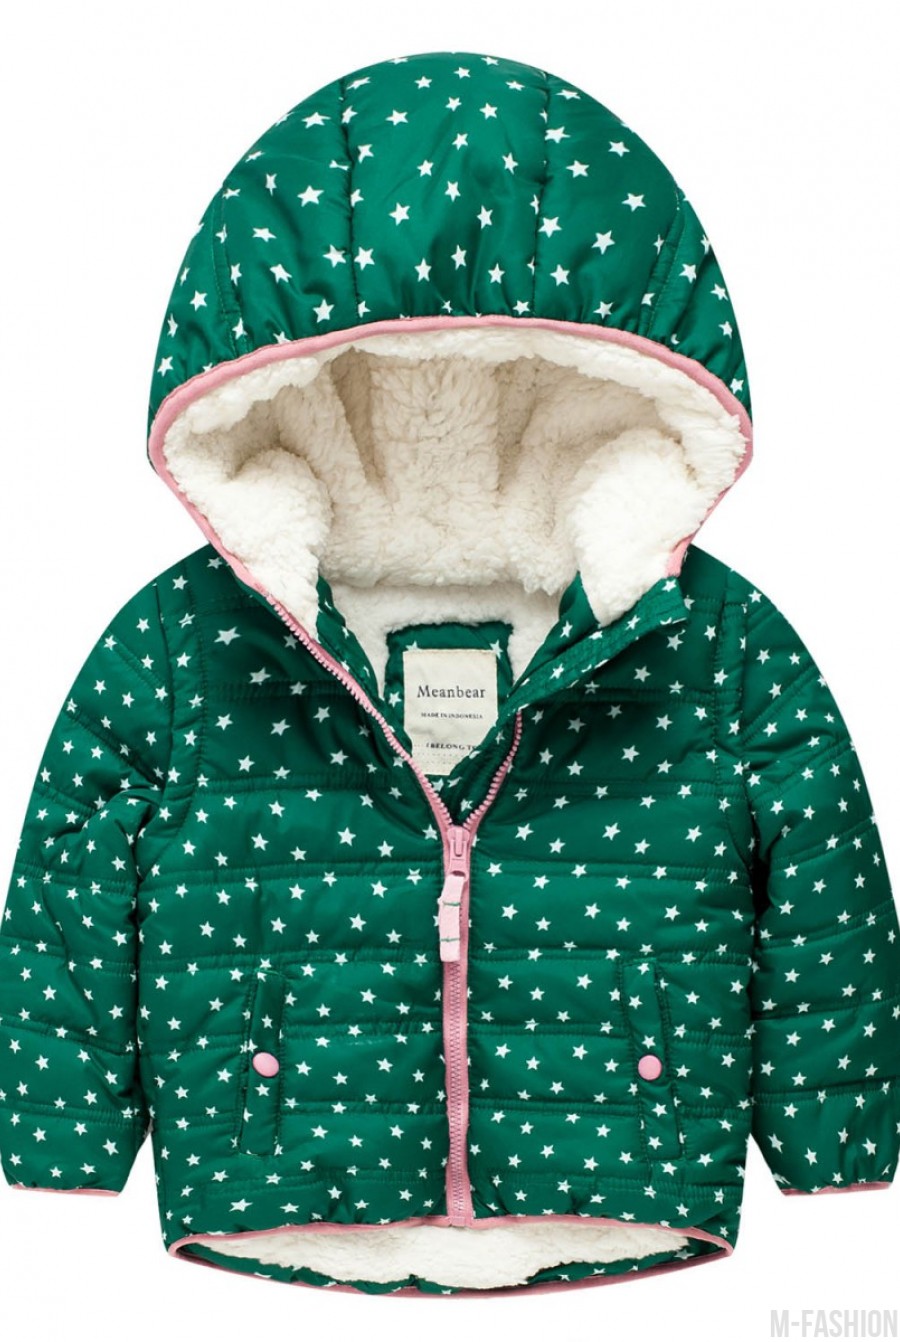 Демисезонная зеленая куртка с подкладкой на флисе, капюшоном и карманами - Фото 1